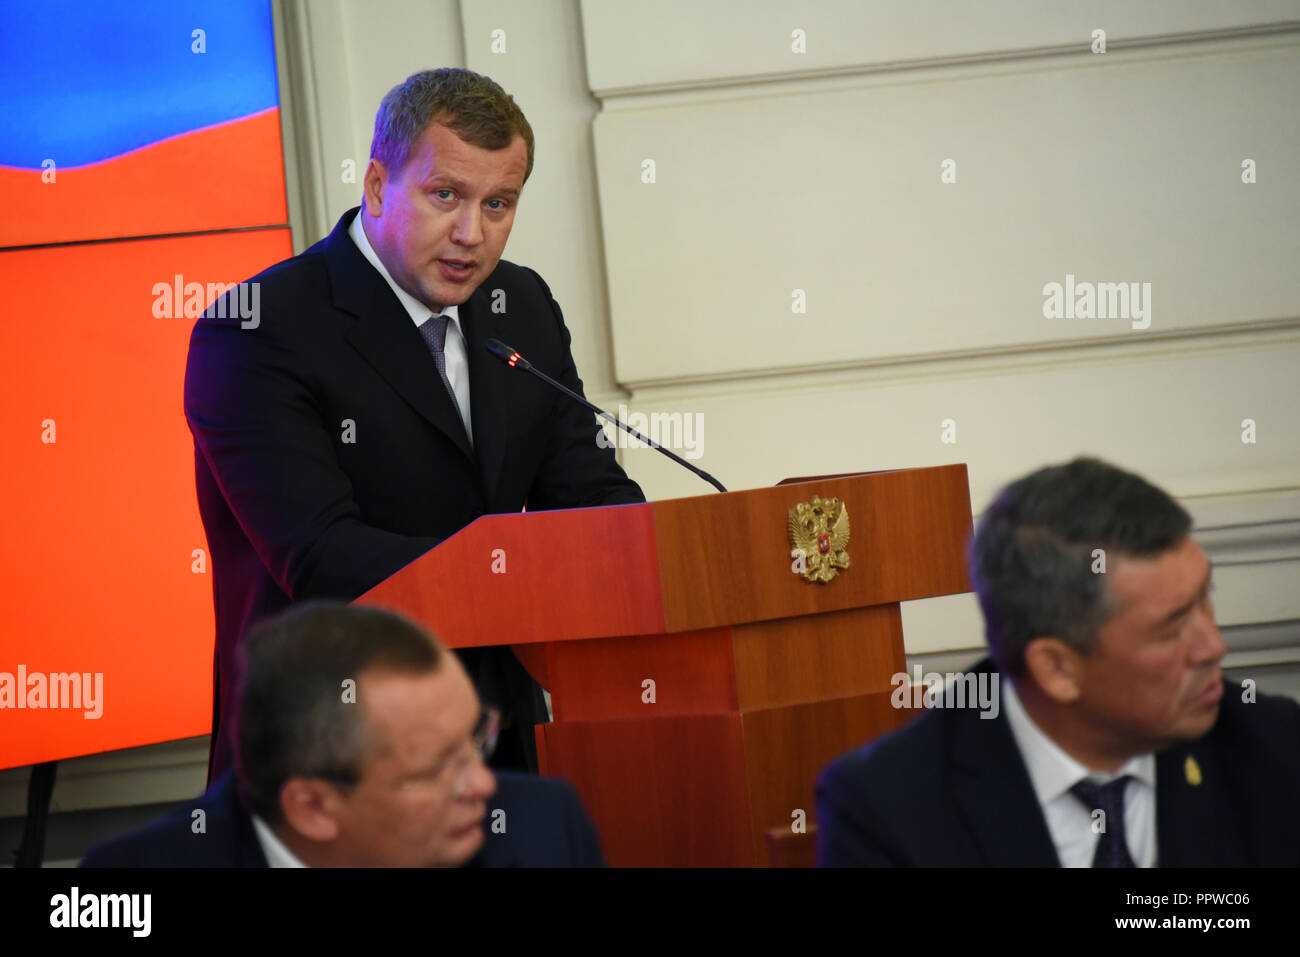 Der Gouverneur der Region Astrachan Sergey Morozov während seiner Präsentation vor der Regierung von Astrakhan Region. Russland. Stockfoto